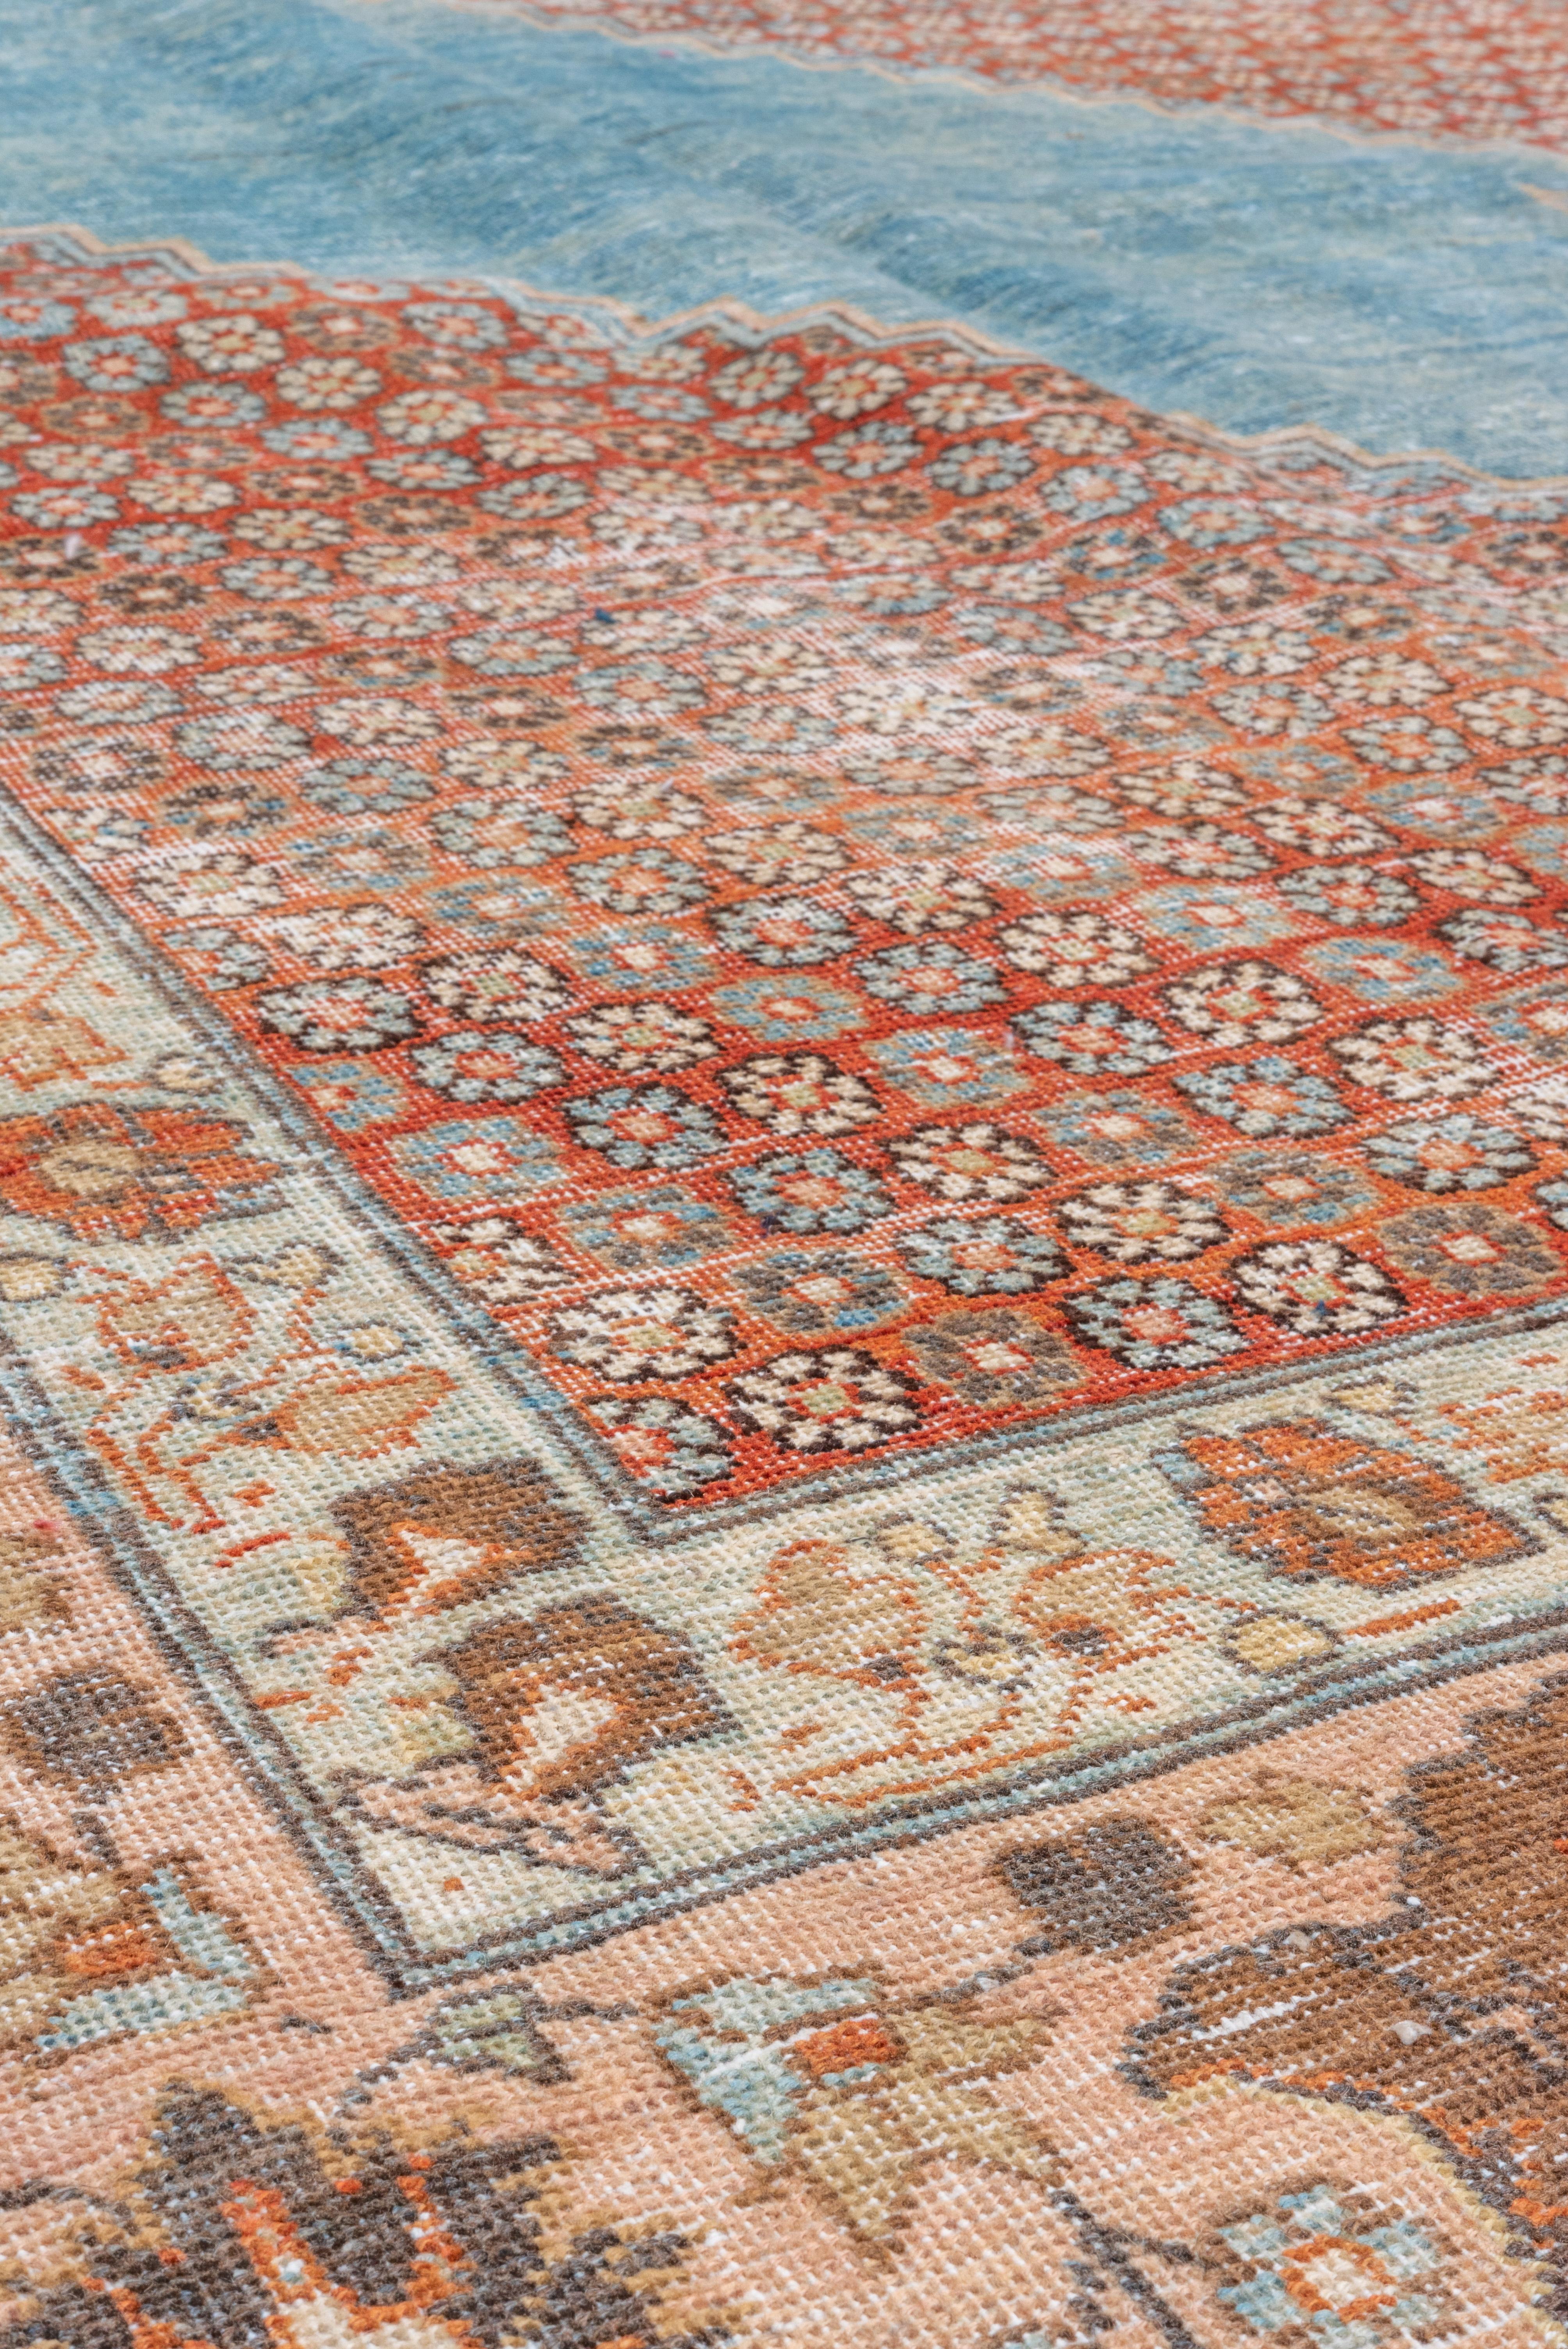 Perse Fine tapis Tabriz ancien coloré, champ intérieur bleu, champ extérieur à fleurs rouges en vente